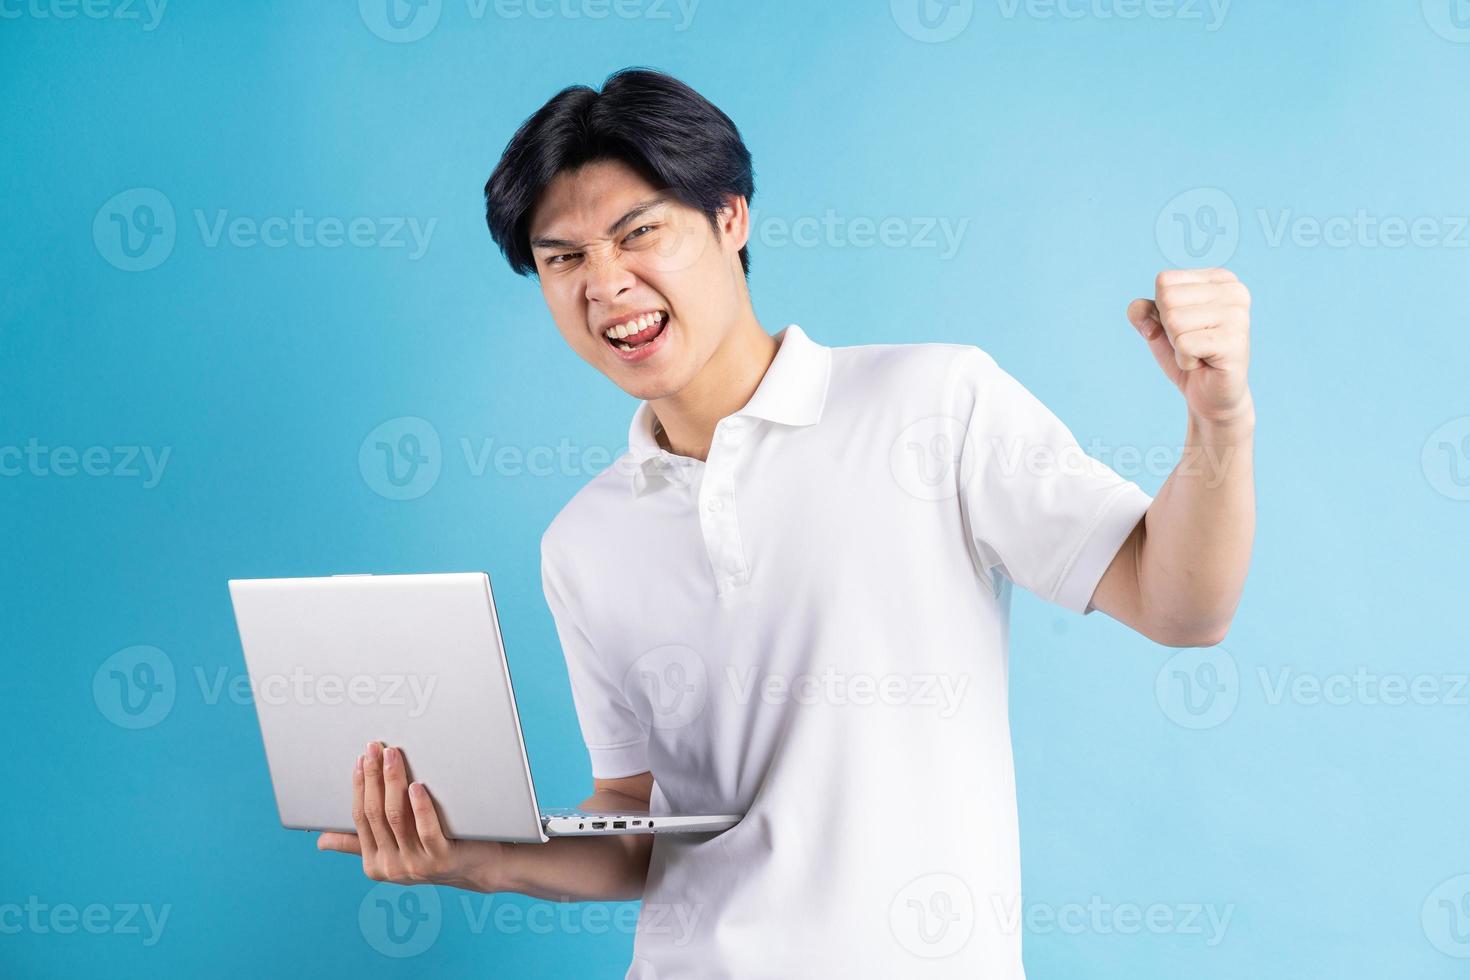 Der asiatische Mann hielt seinen Laptop in der Hand und zeigte einen triumphierenden Gesichtsausdruck foto